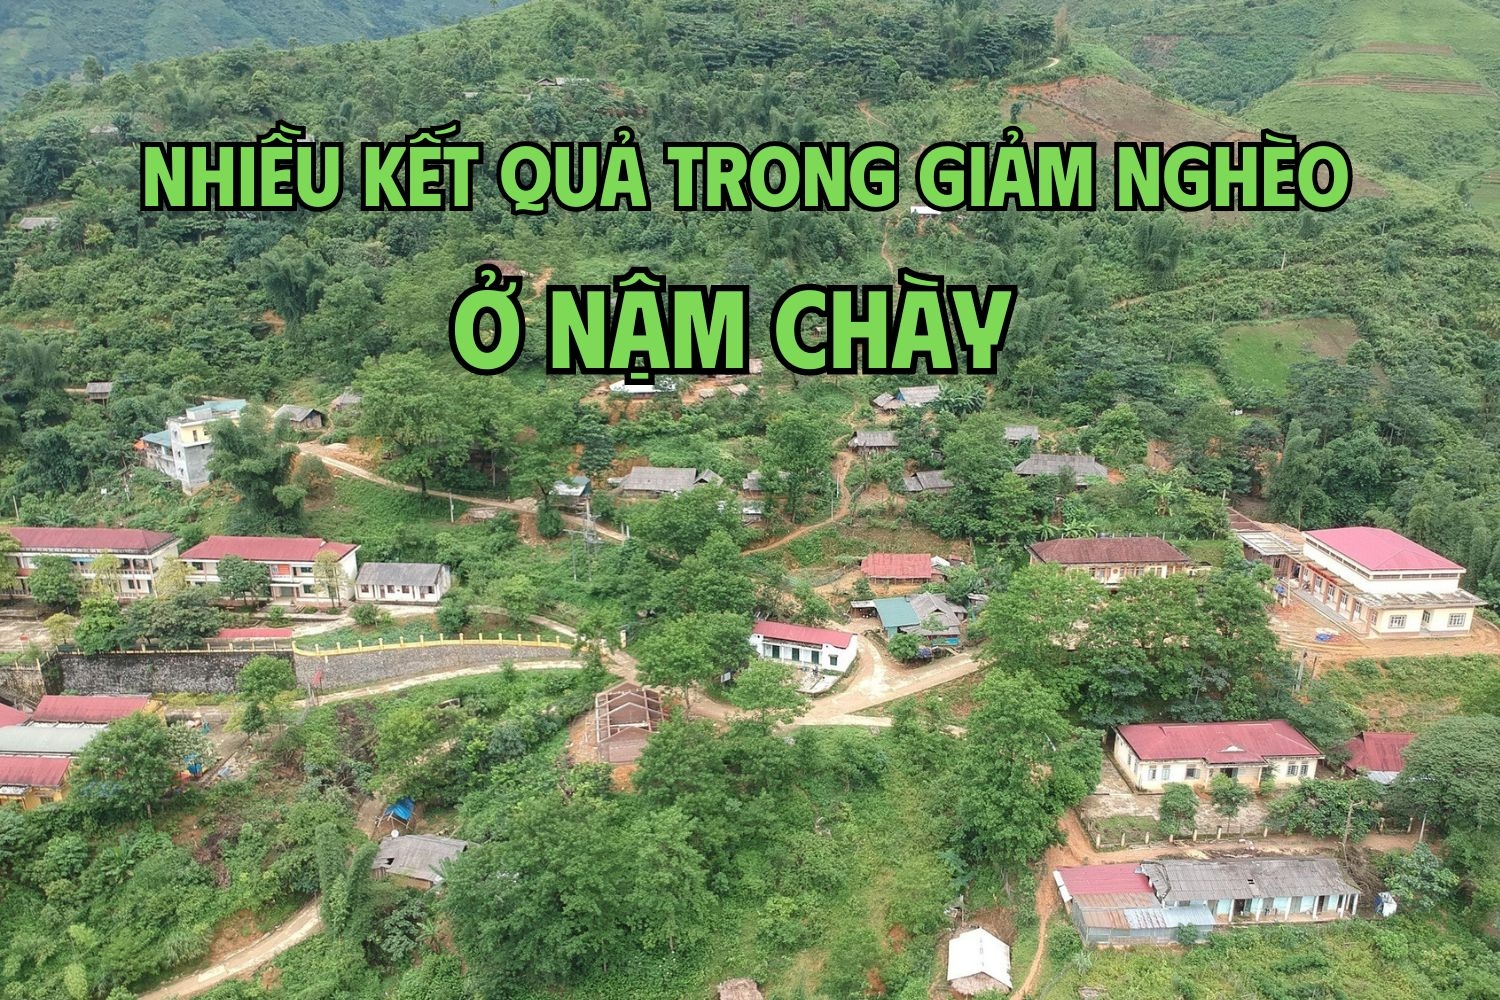 Nhiều kết quả trong giảm nghèo ở Nậm Chày